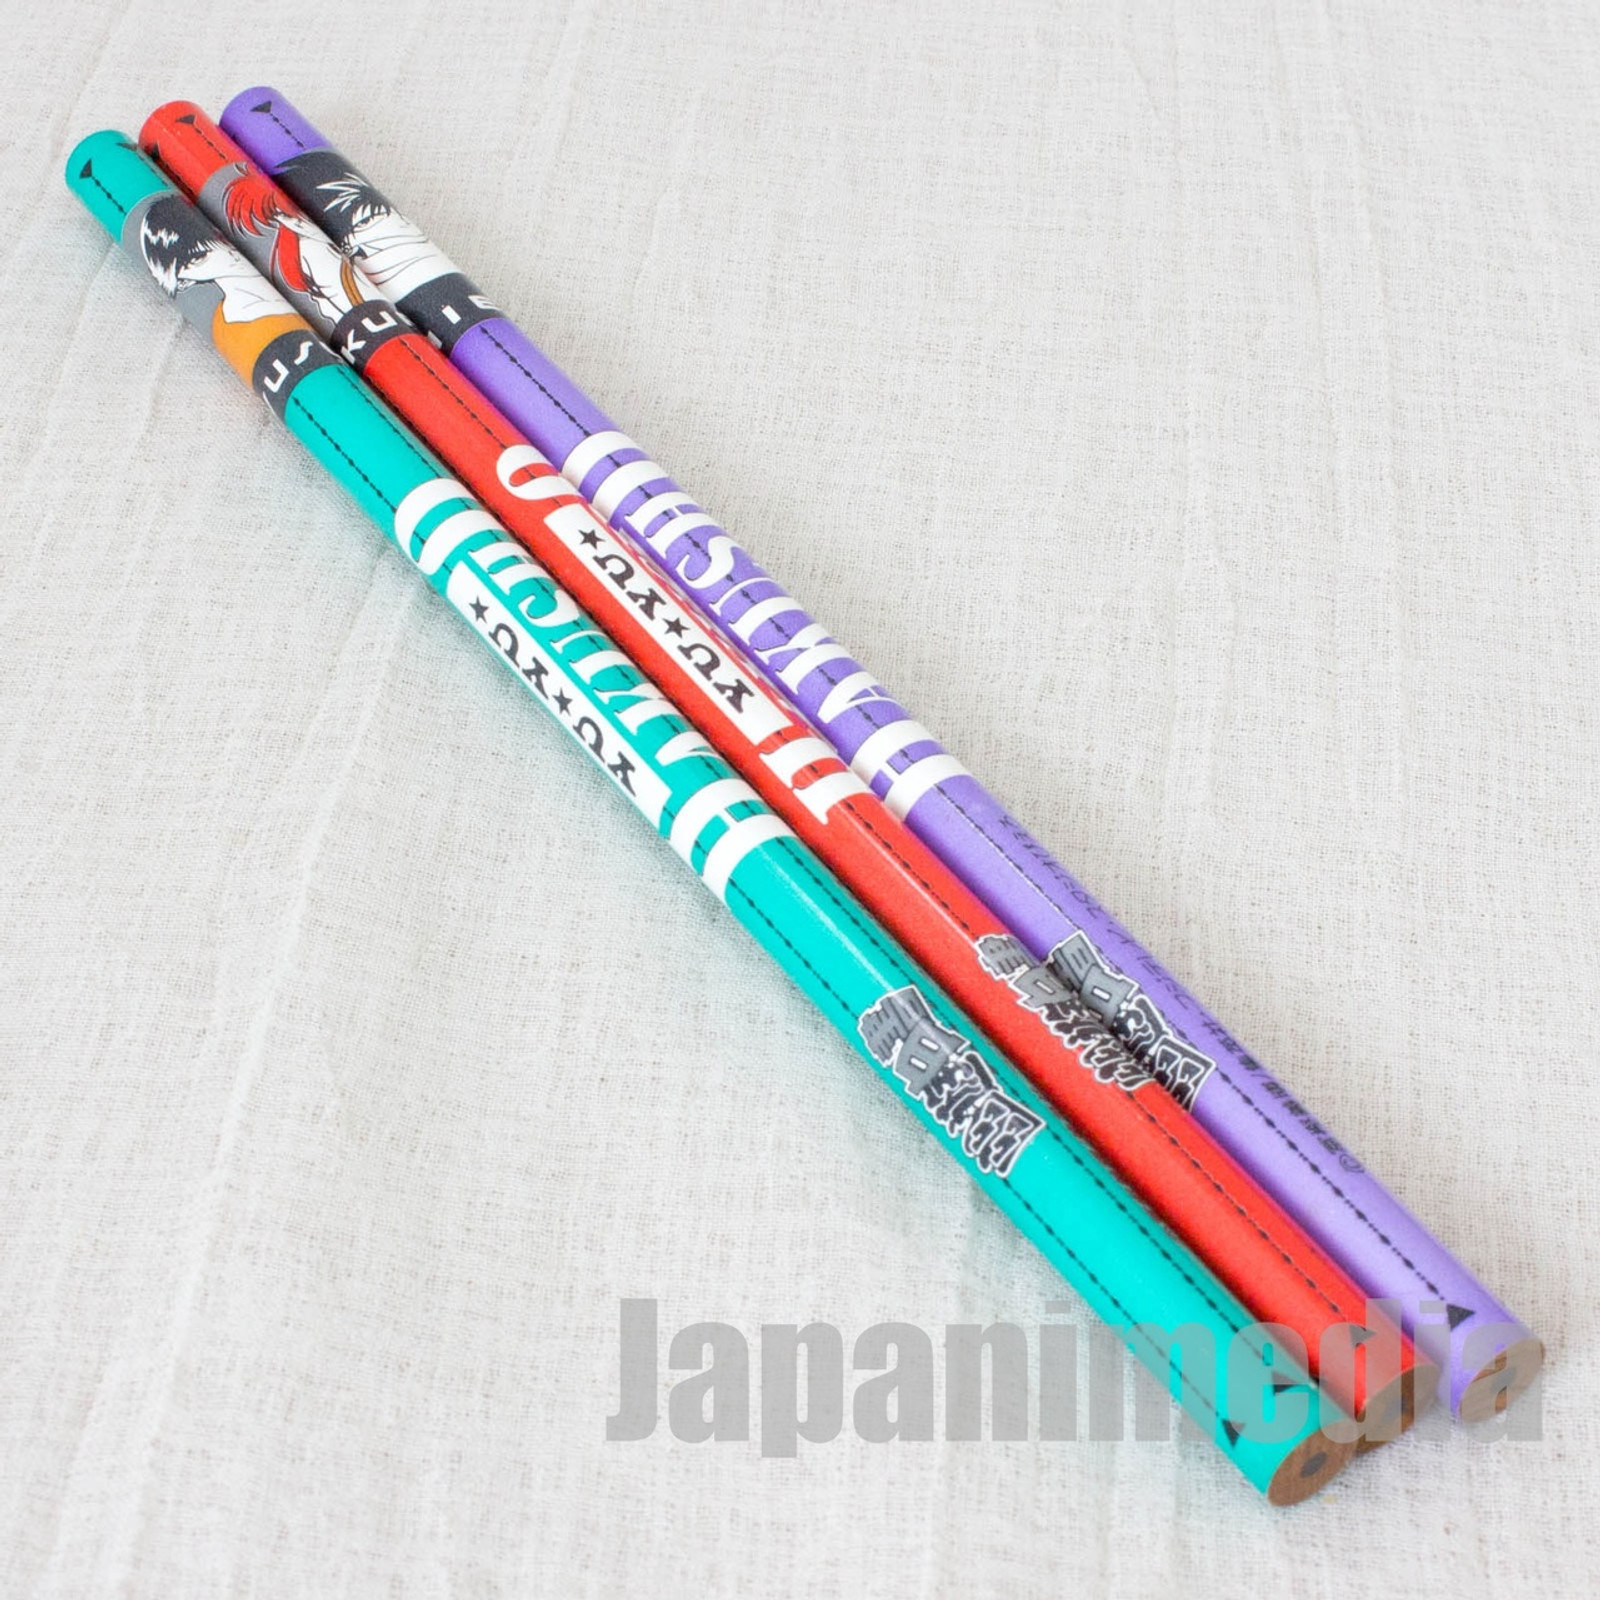 Yu Yu Hakusho Stationery set / Pen Case + 3pc Pencil + Eraser JAPAN ANIME MANGA